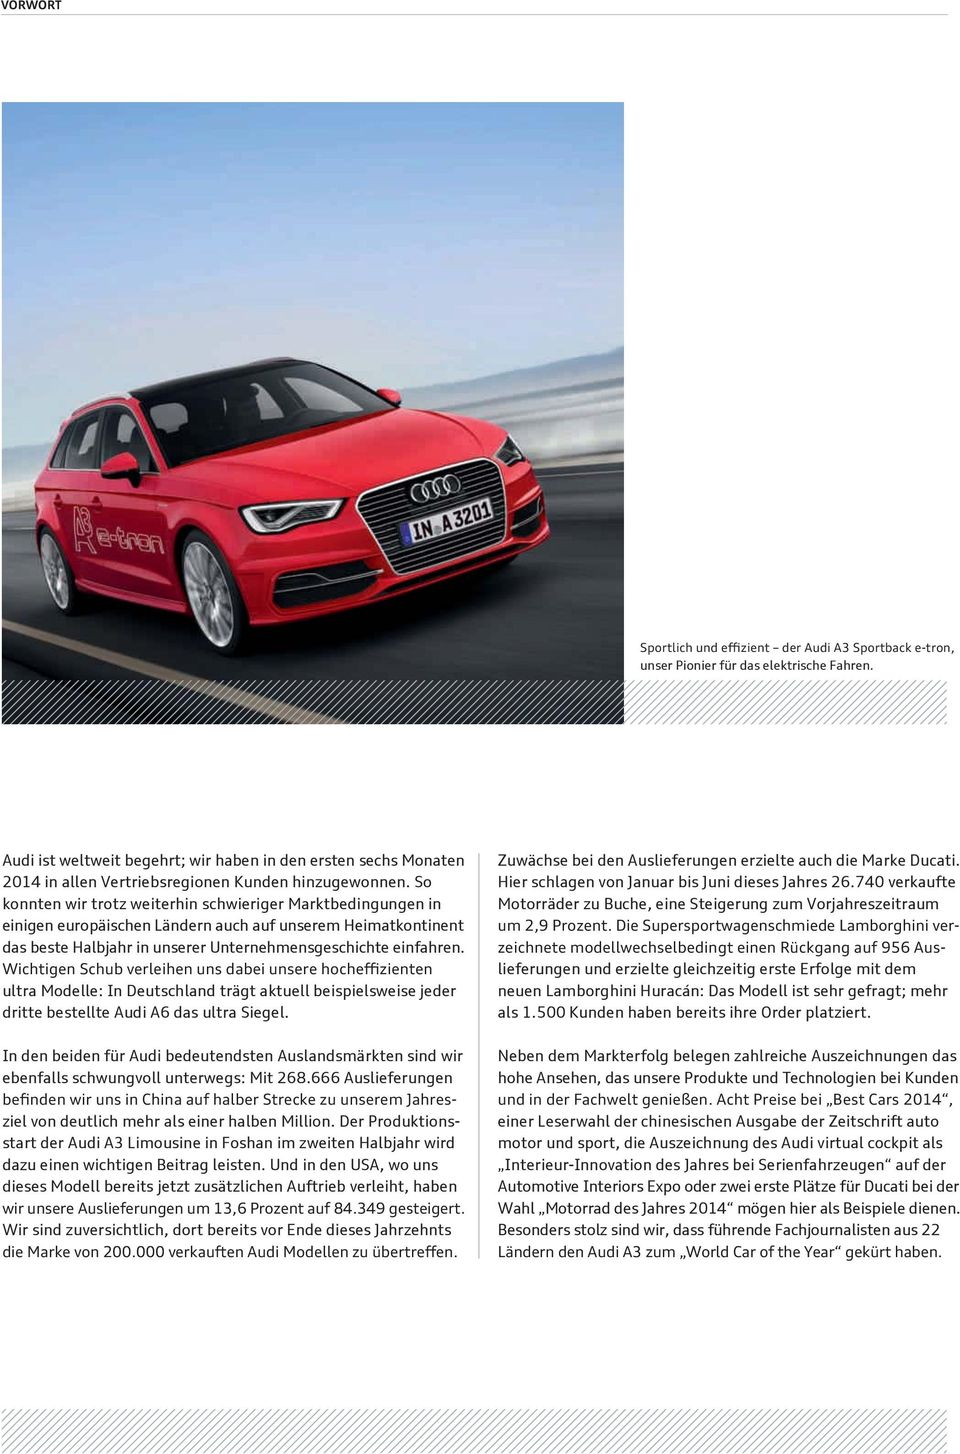 ultra Modelle: In Deutschland trägt aktuell beispielsweise jeder dritte bestellte Audi A6 das ultra Siegel.